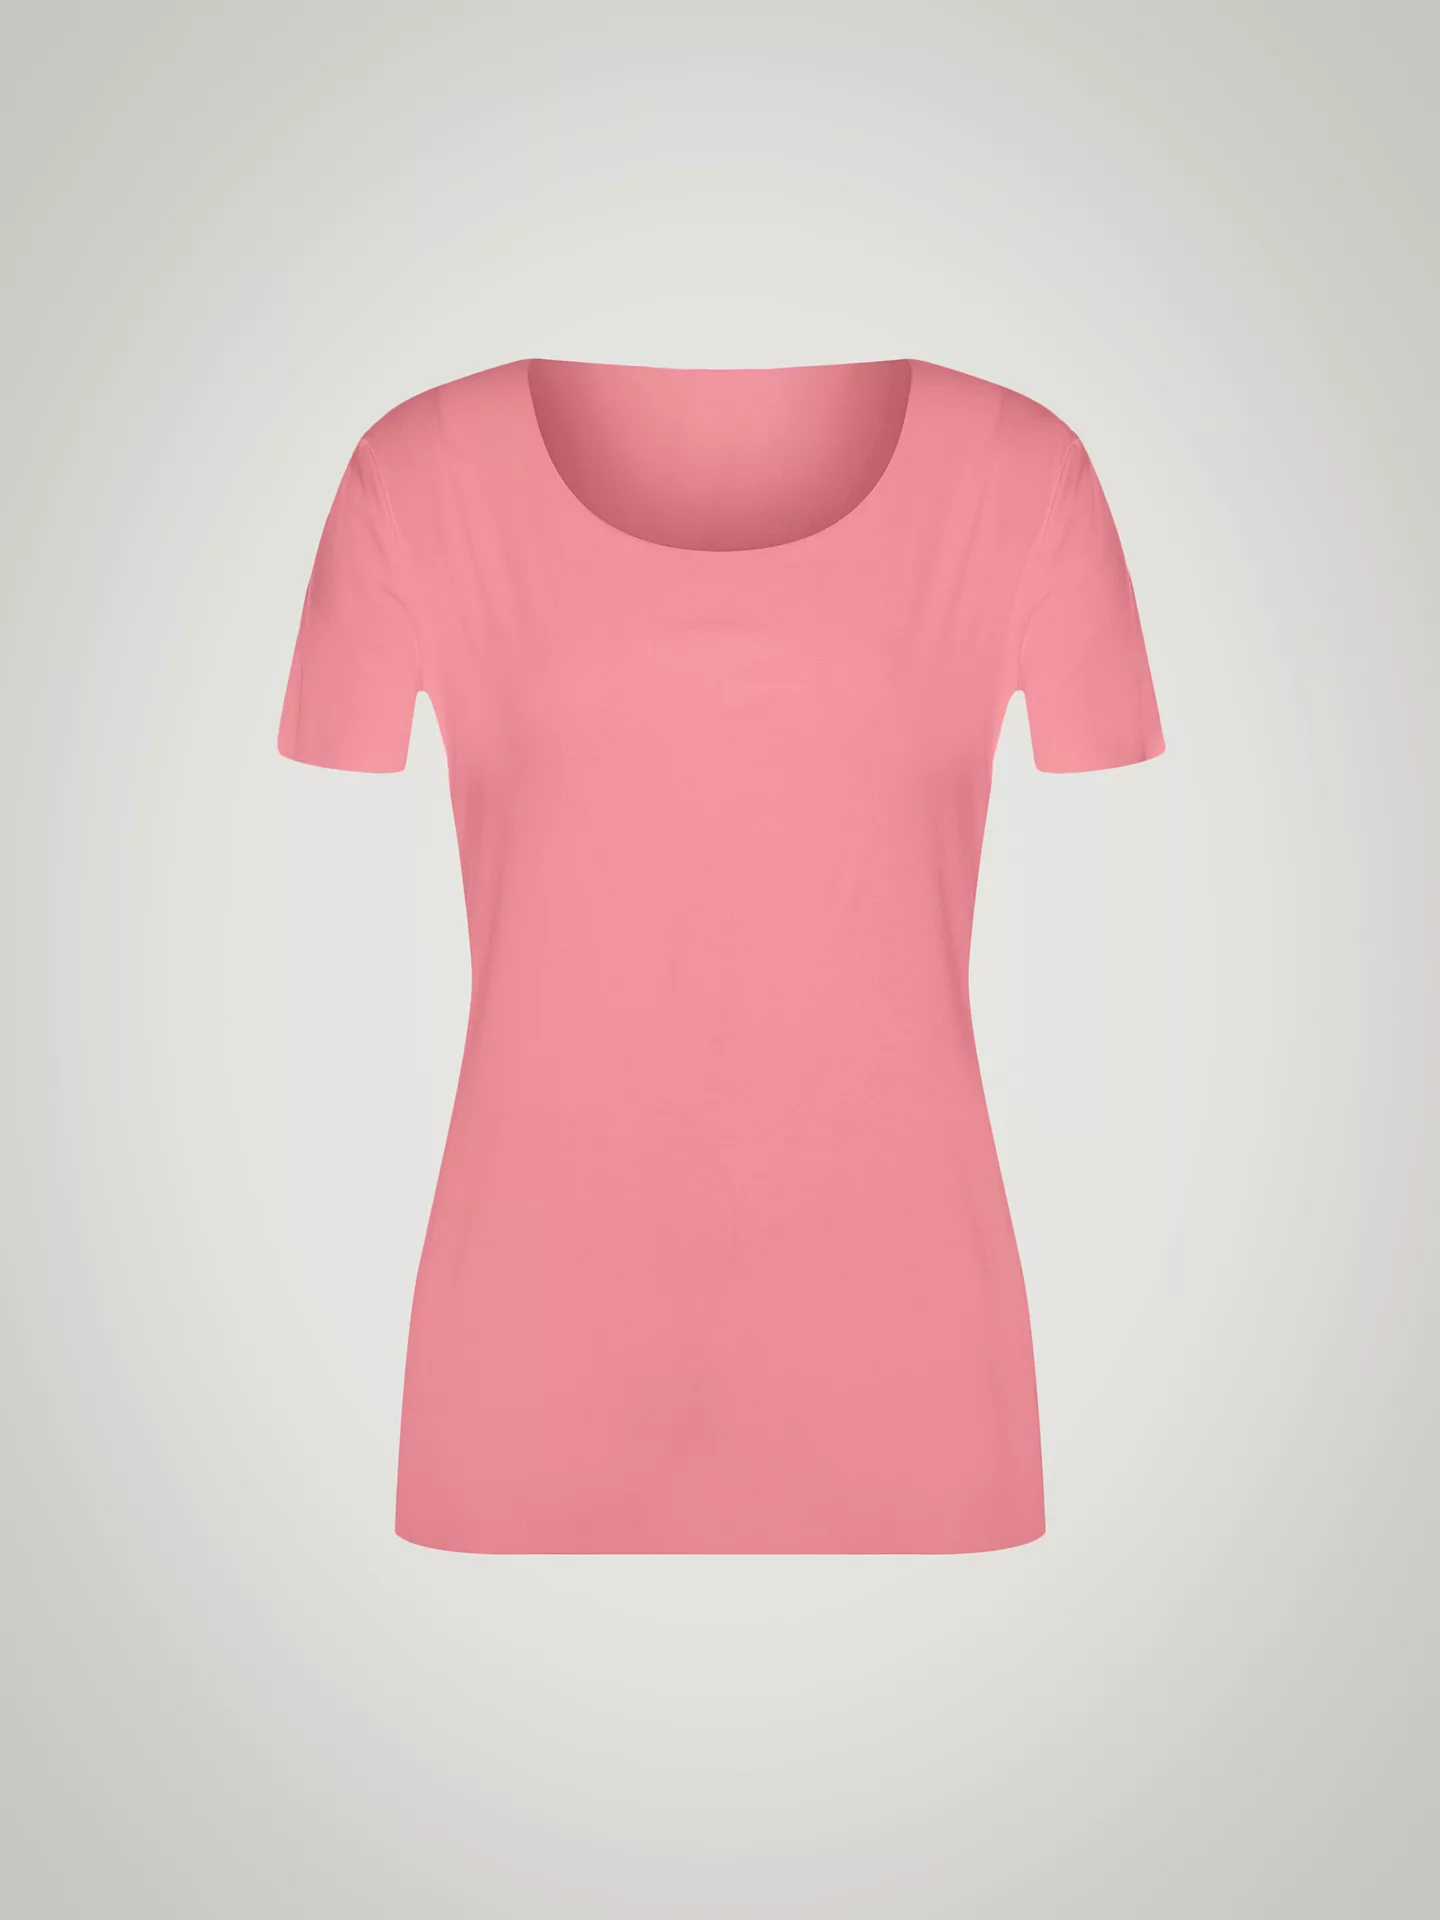 Wolford - Aurora Pure Shirt, Frau, brandied apricot, Größe: XS günstig online kaufen